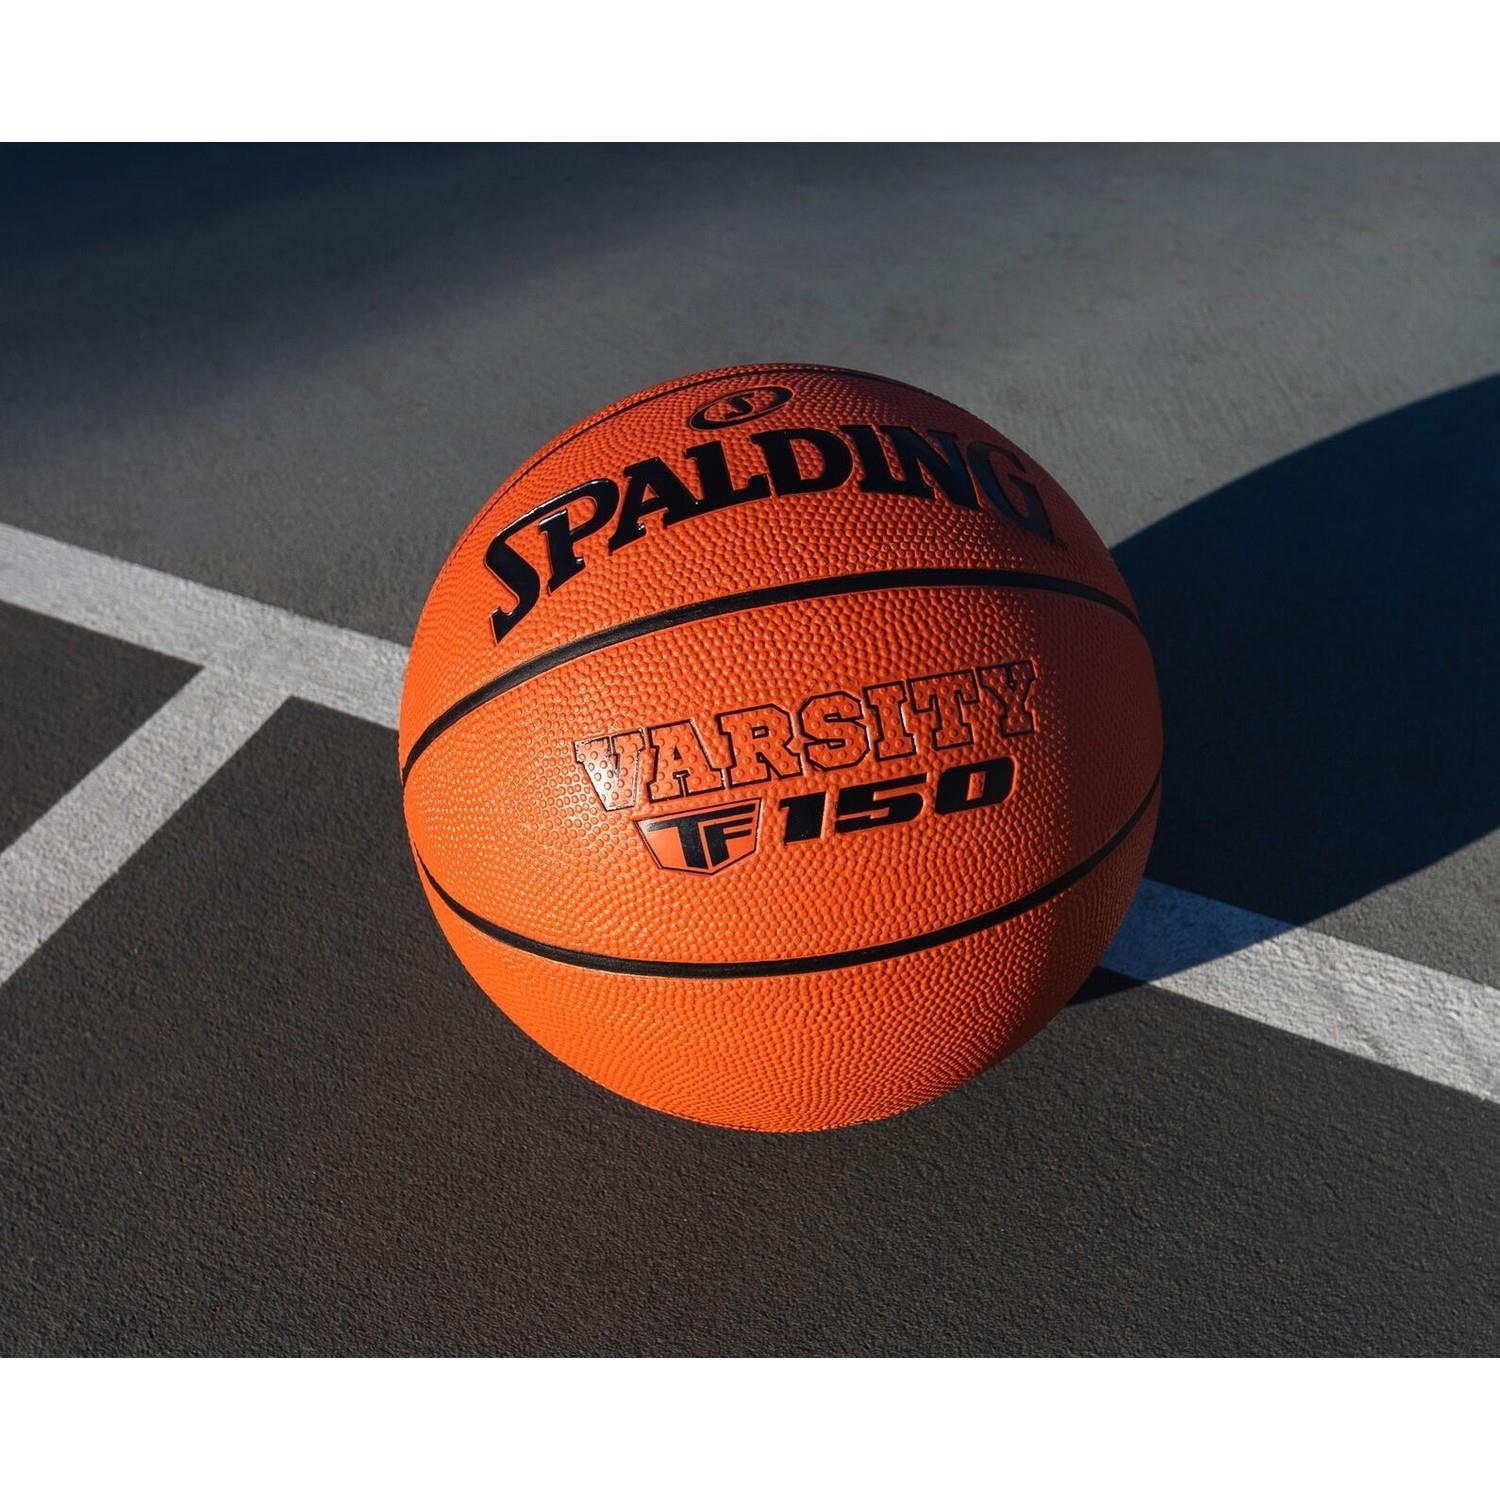 Spalding TF-150 Varsity Fiba Basketbol Topu No:6 - Boksshop